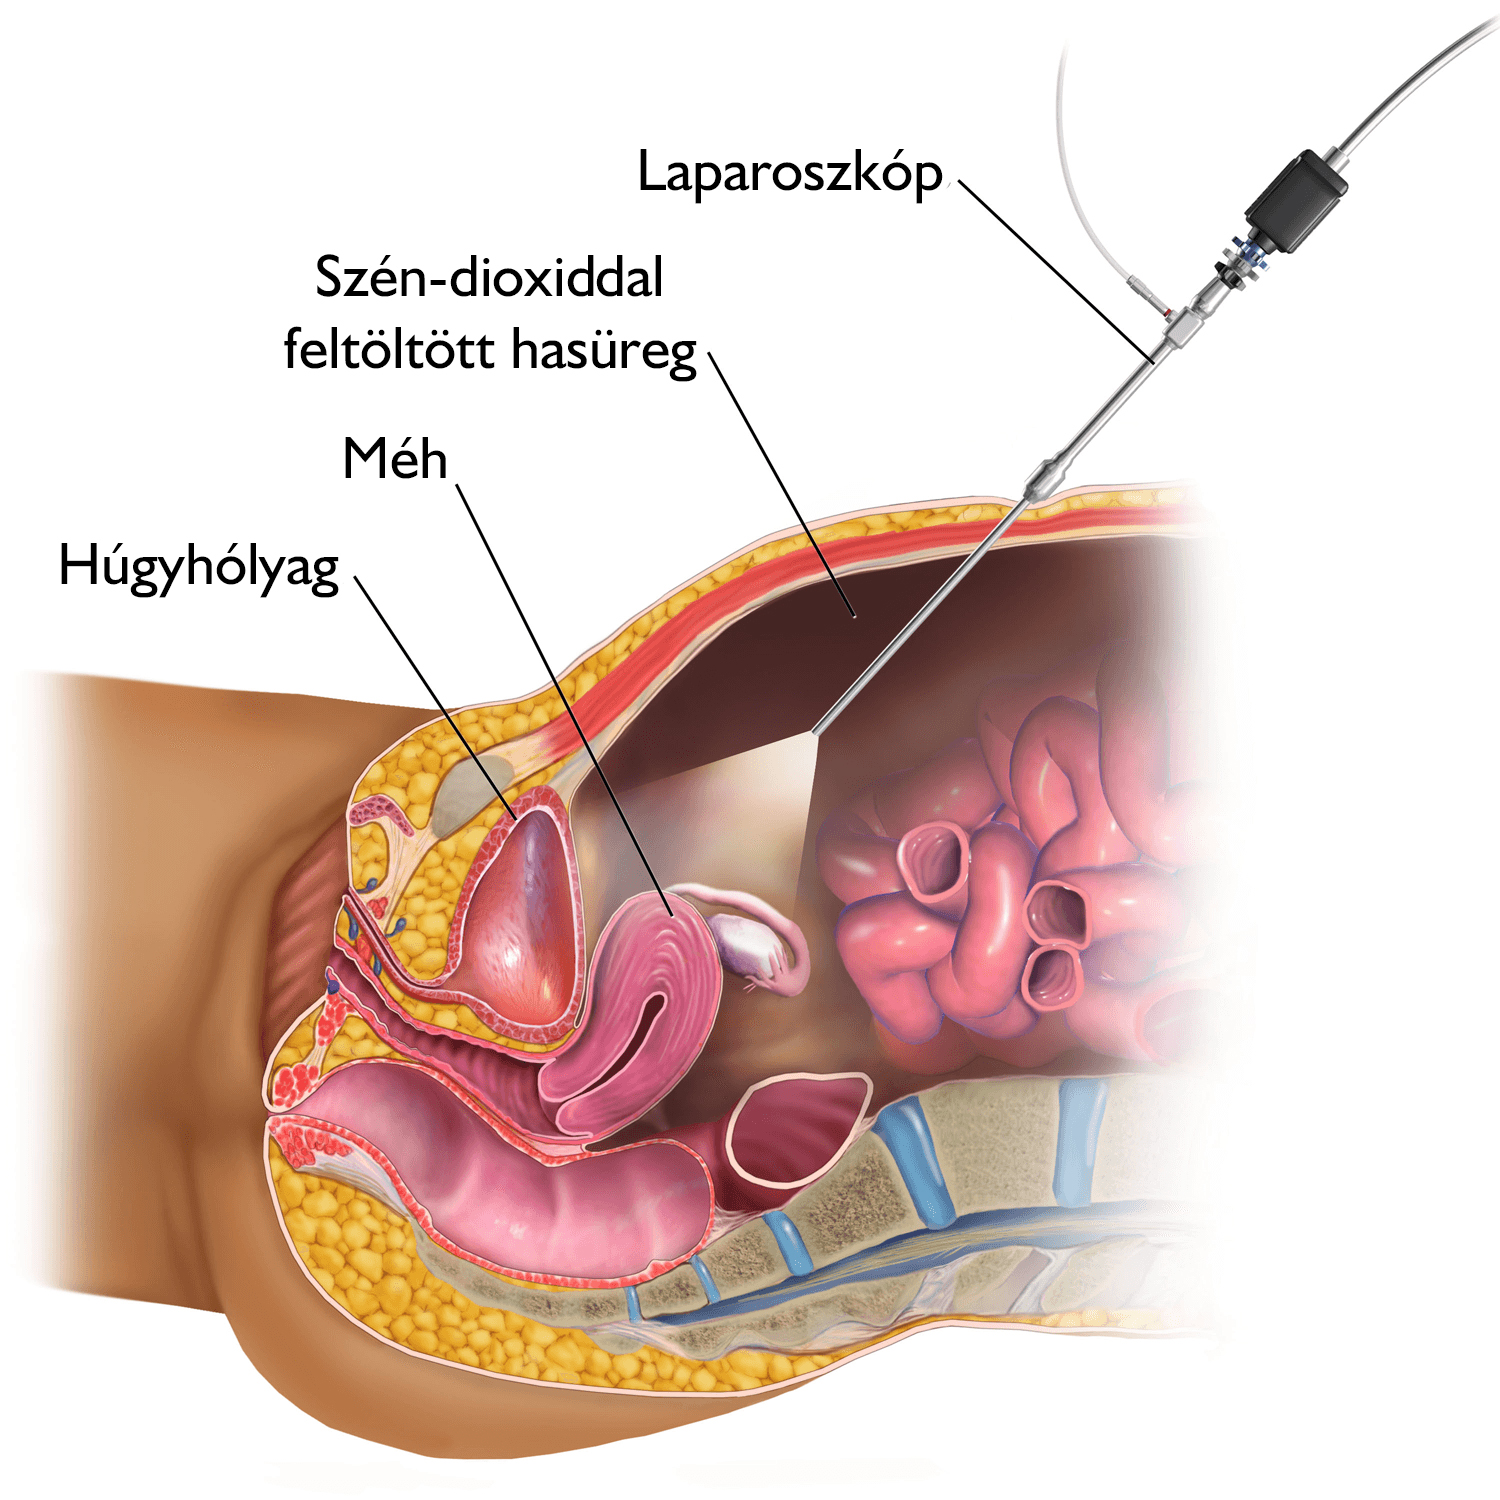 A bariatric sebészet típusai Fogyáskezelés | MedMonks, Fogyás myomectomia